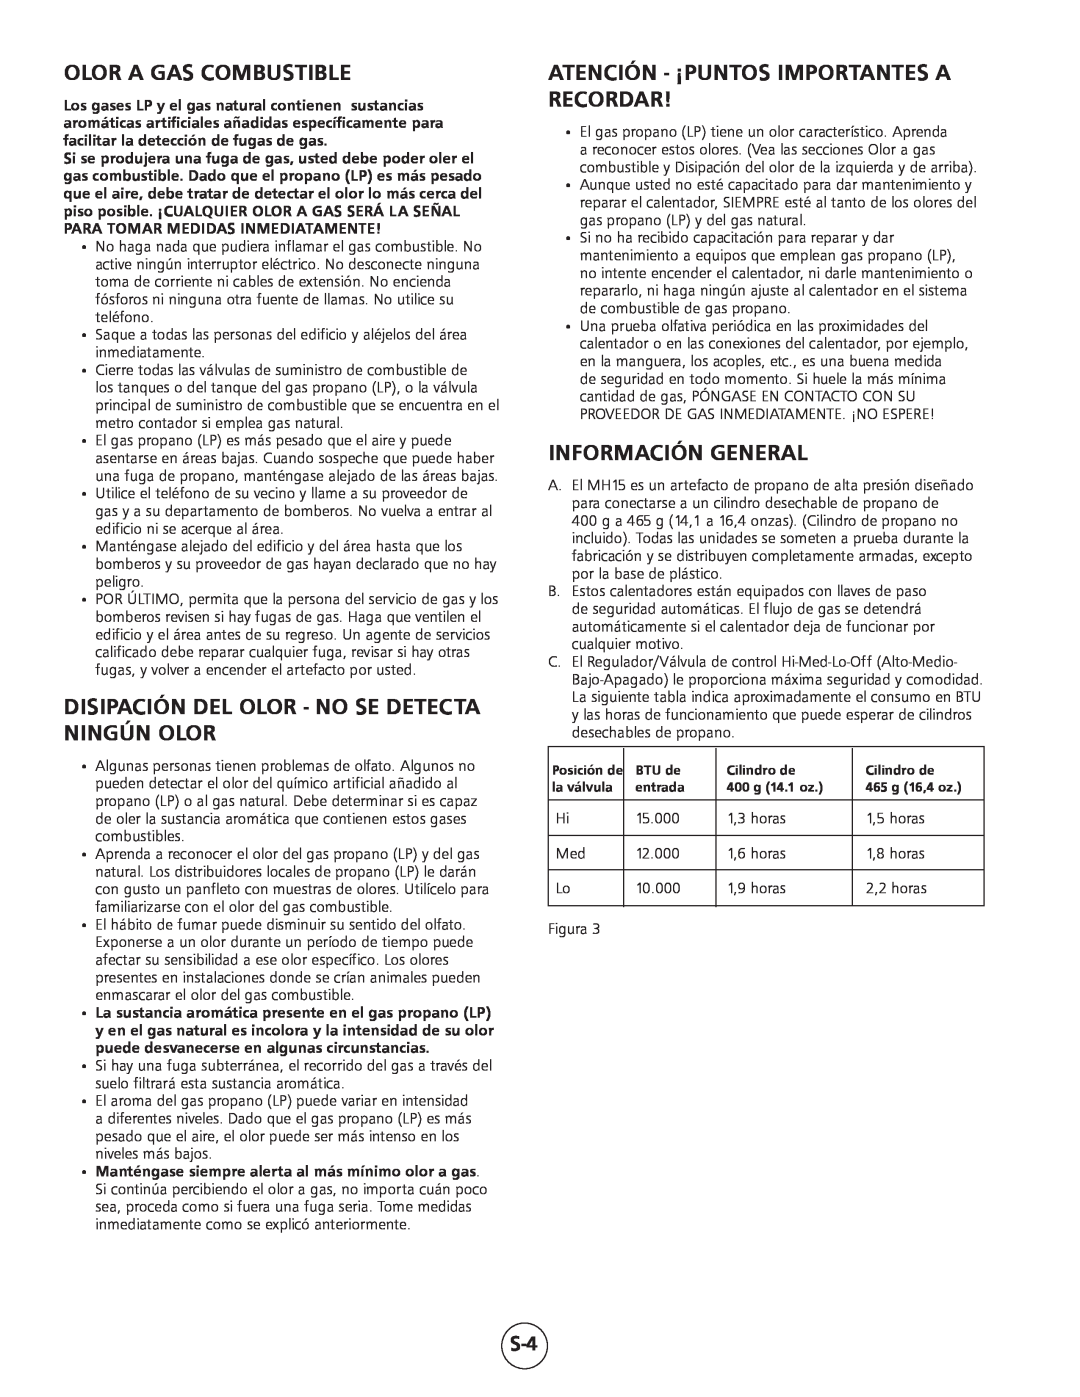 Mr. Heater MH15 Olor A Gas Combustible, Disipación Del Olor - No Se Detecta Ningún Olor, Información General 